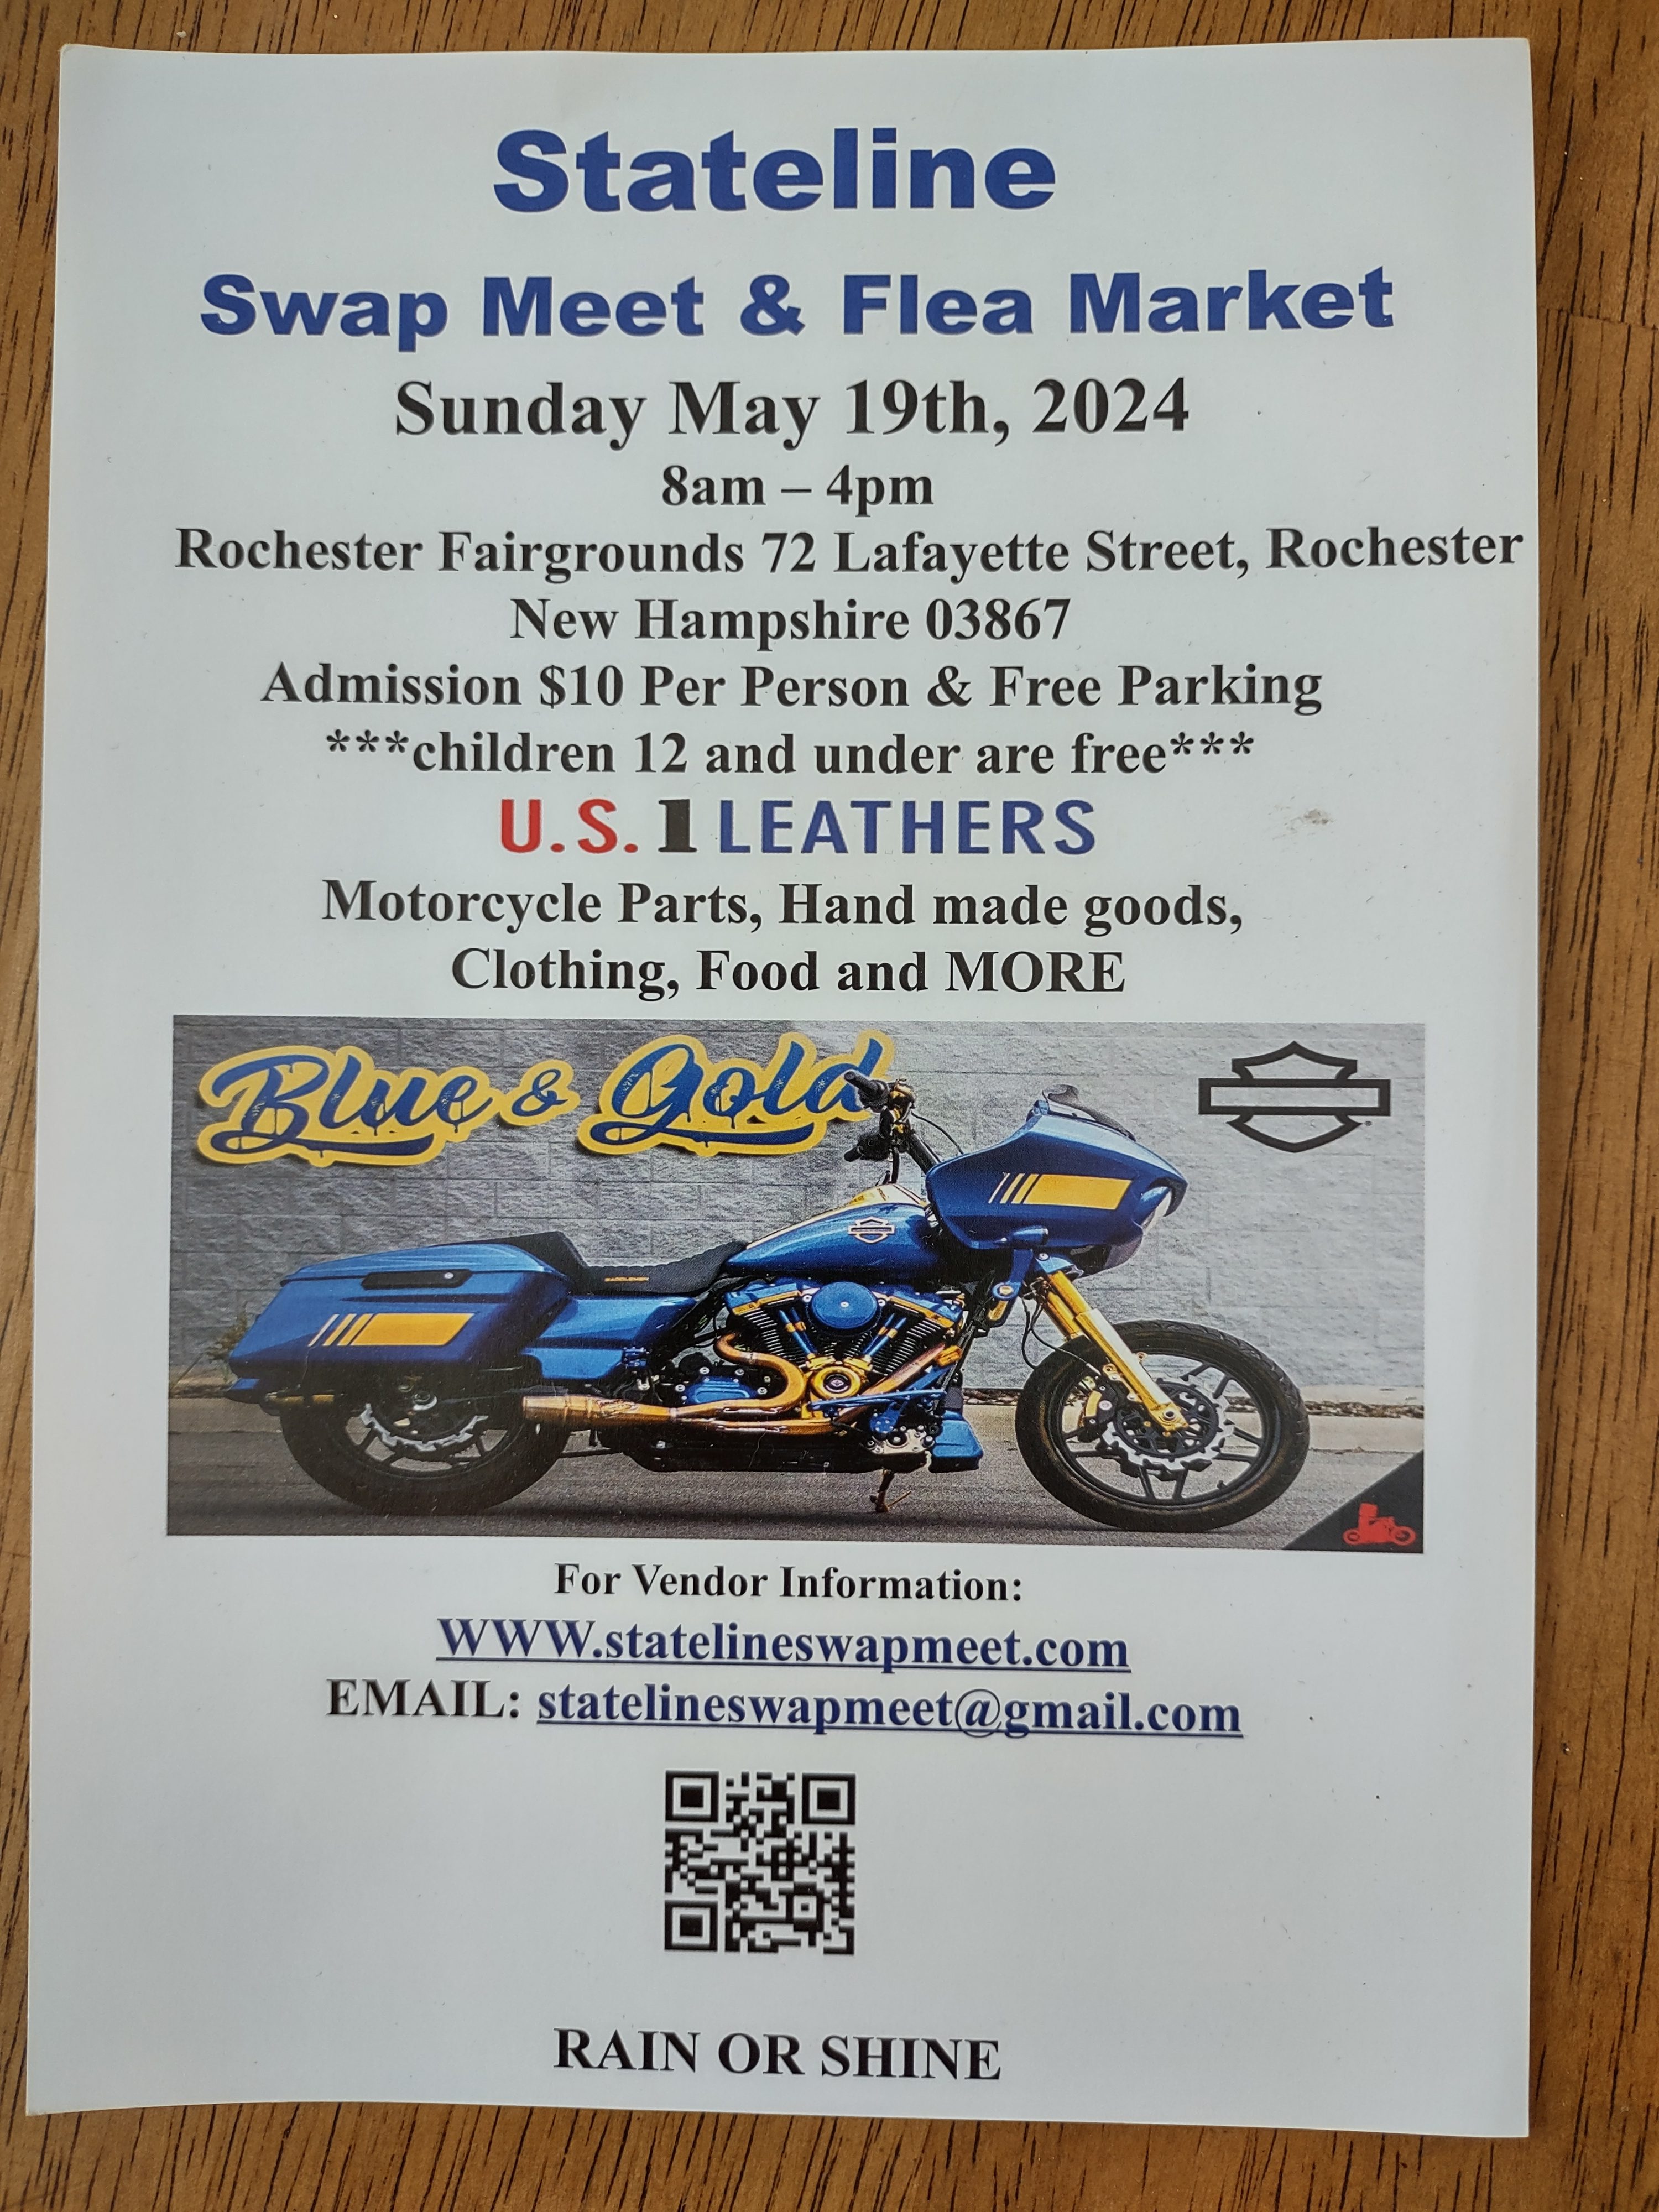 Stateline Motorcycle Swap Meet & Flea Market